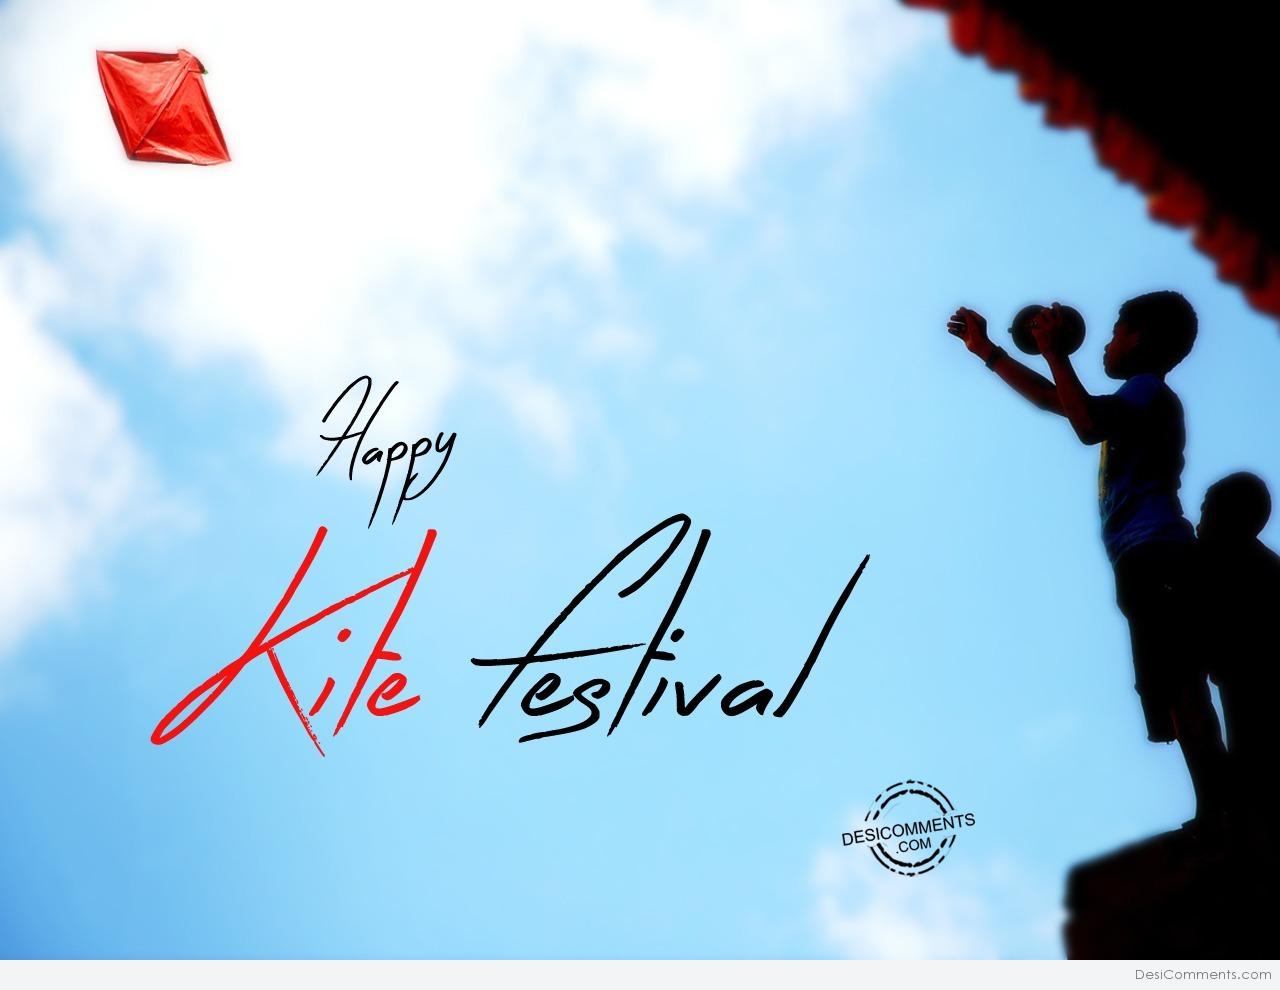 Kite Festival Picture, Image, Photo